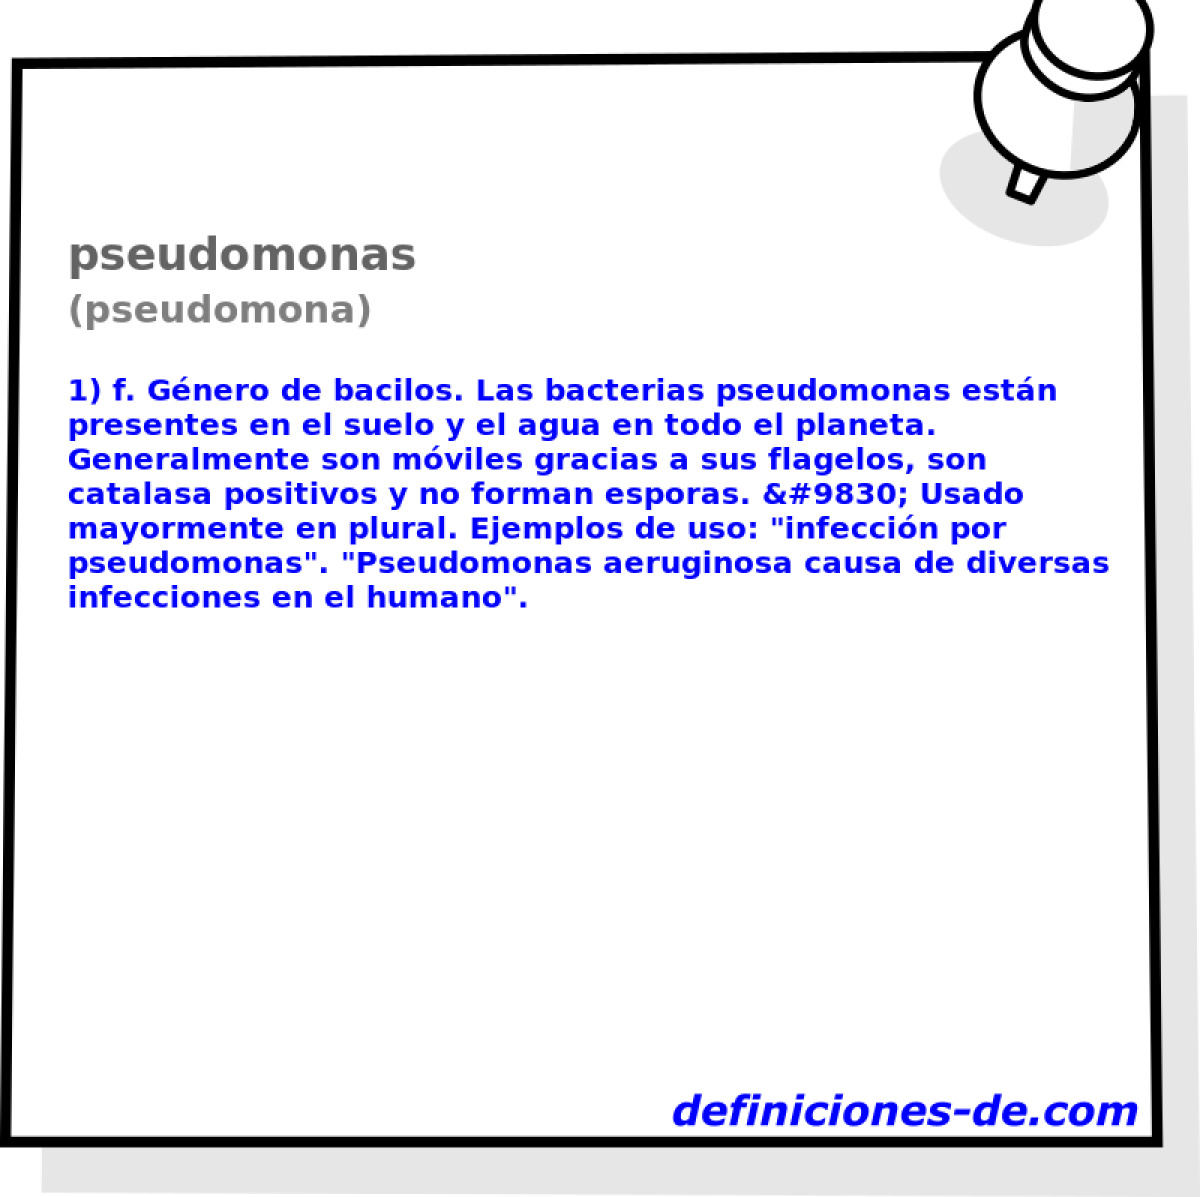 pseudomonas (pseudomona)